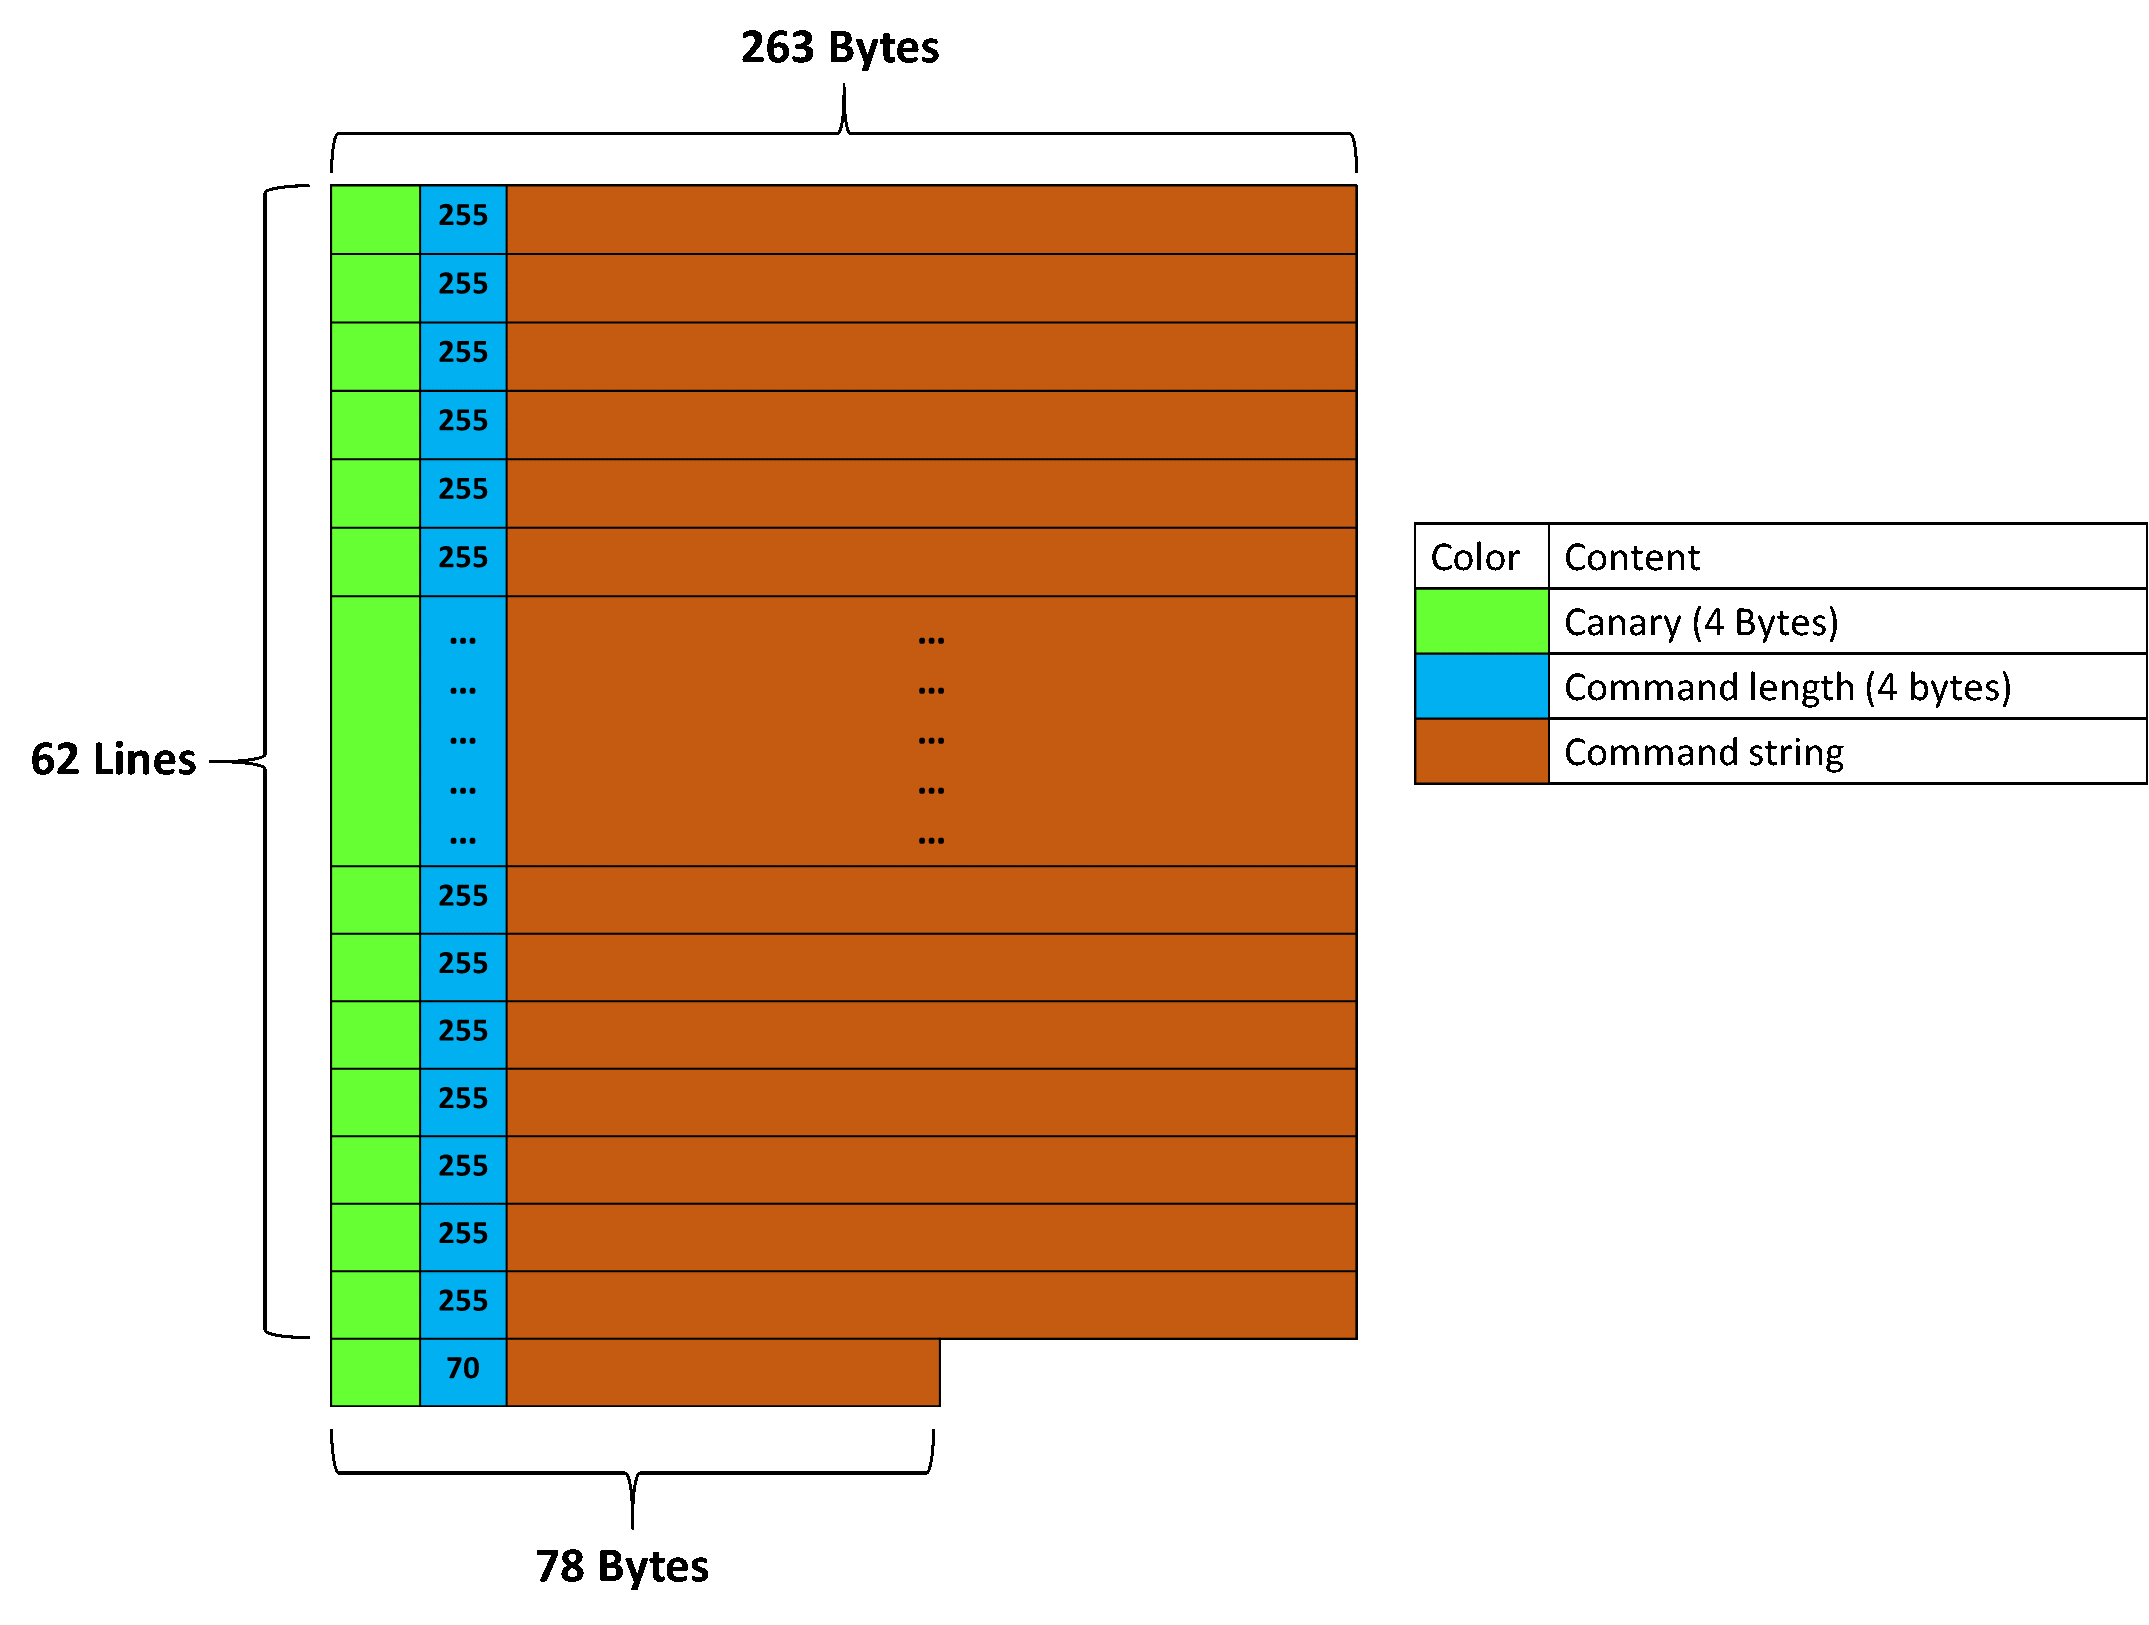 Memory layout with buffer at max capacity